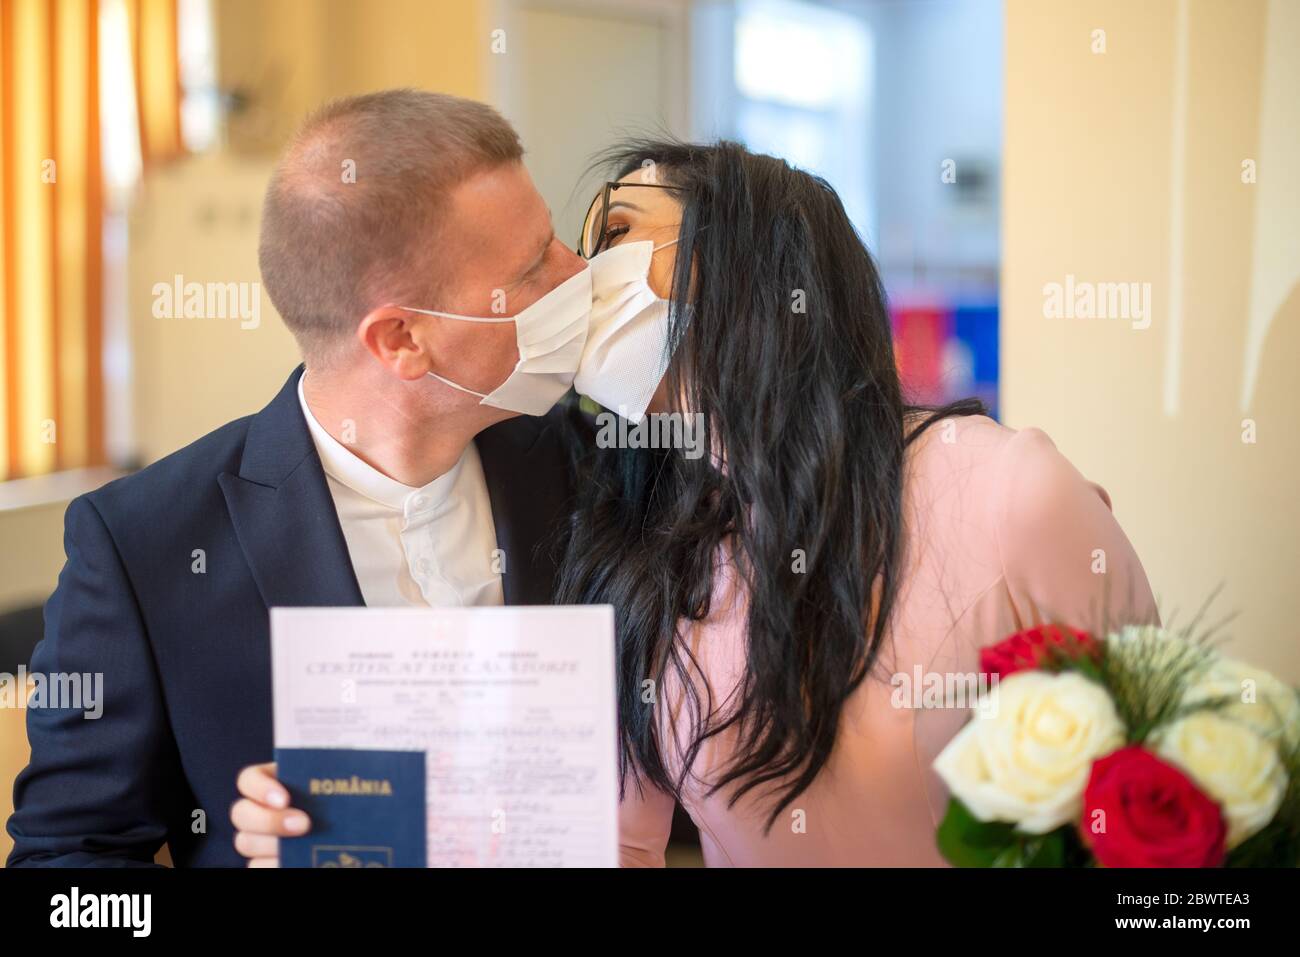 Galati, Romania - 10 aprile 2020: Coppia innamorata appena sposata in una pandemia di covidio. Baciare con maschera sul viso e certificato di matrimonio in mani Foto Stock